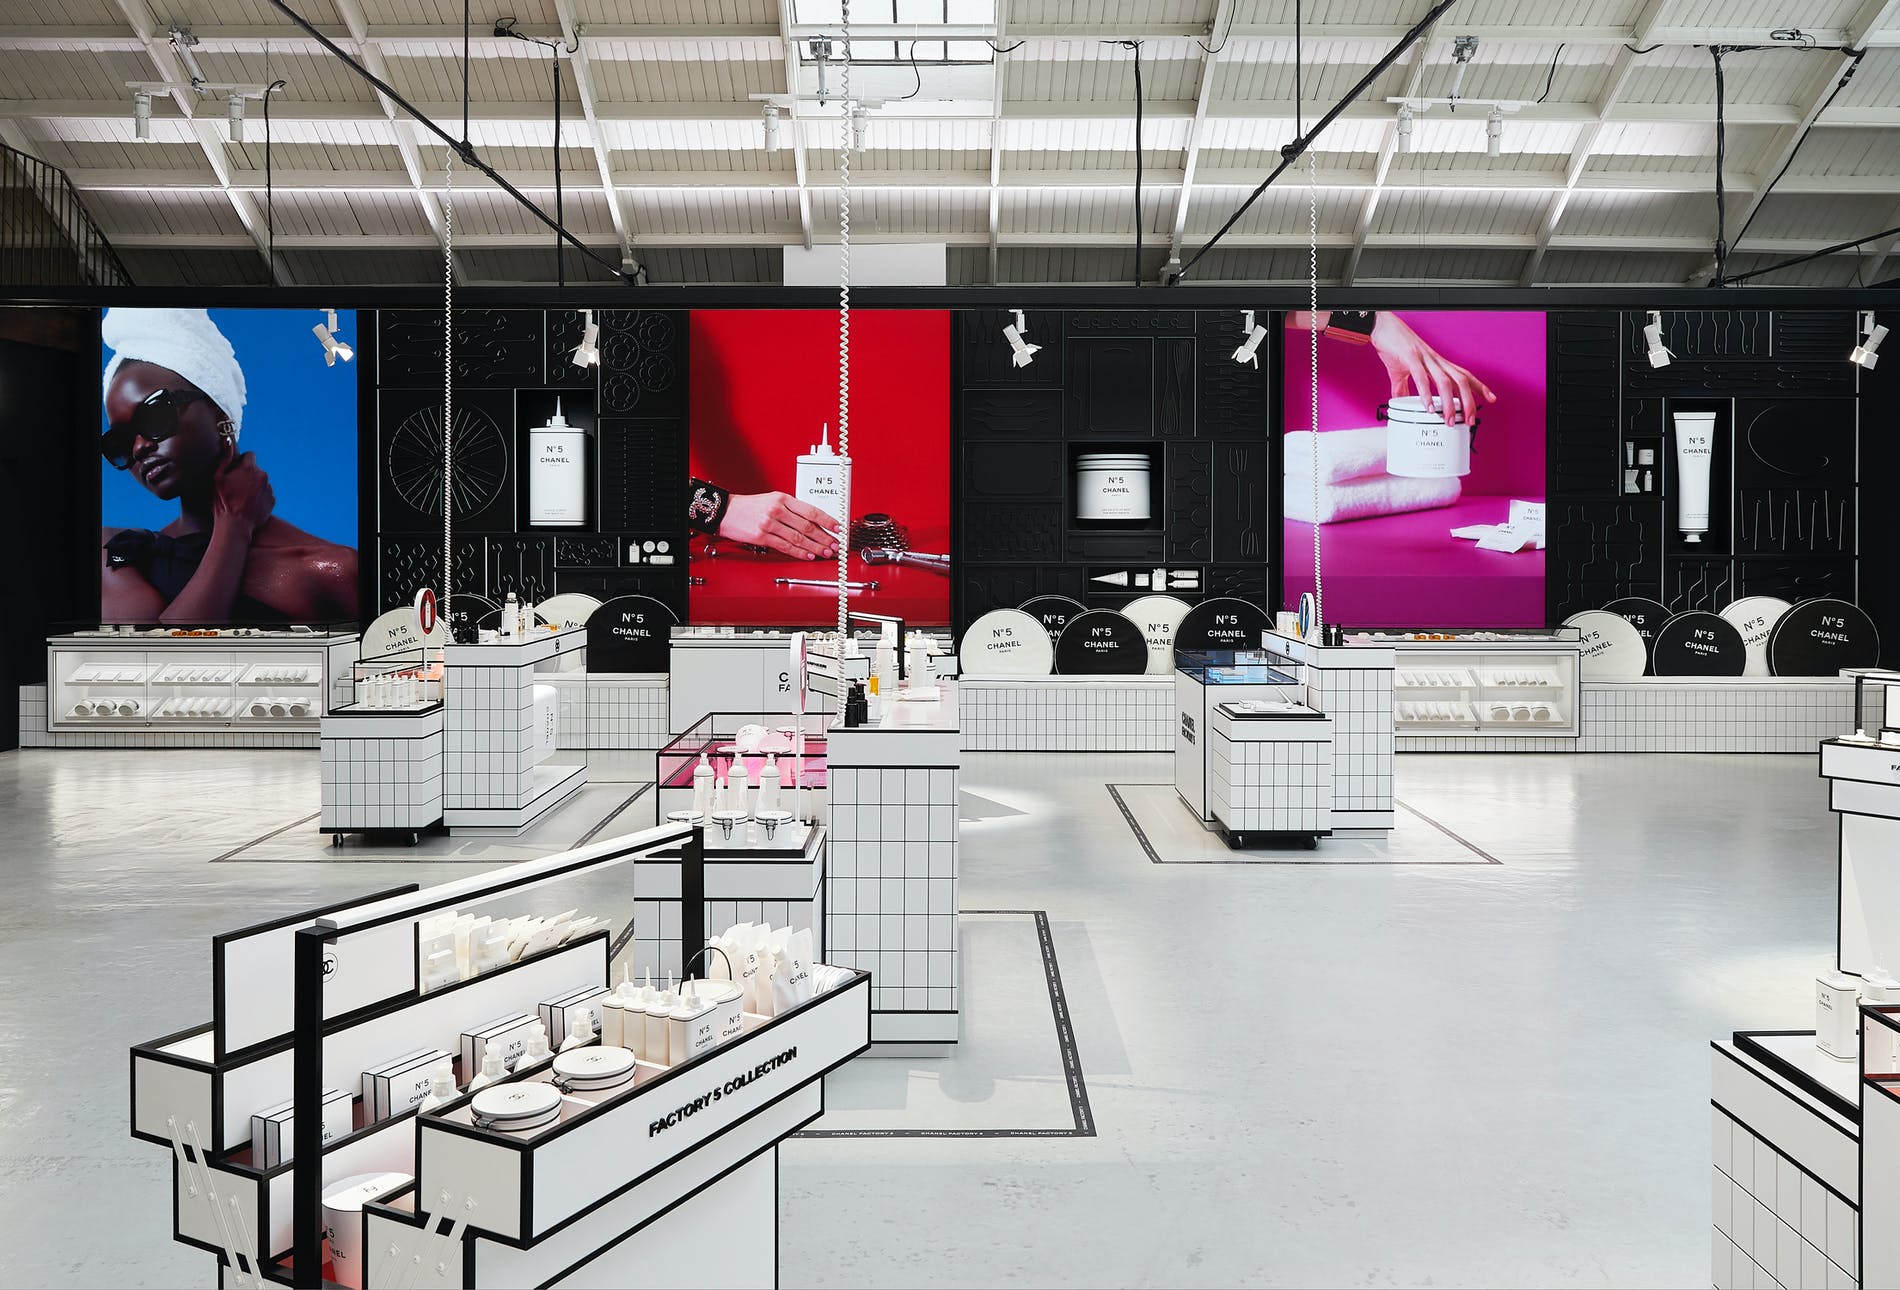 CHANEL FACTORY 5: La Pop-Up Store de la Maison donde podrás vivir una experiencia de lujo dentro de una fábrica ultramoderna